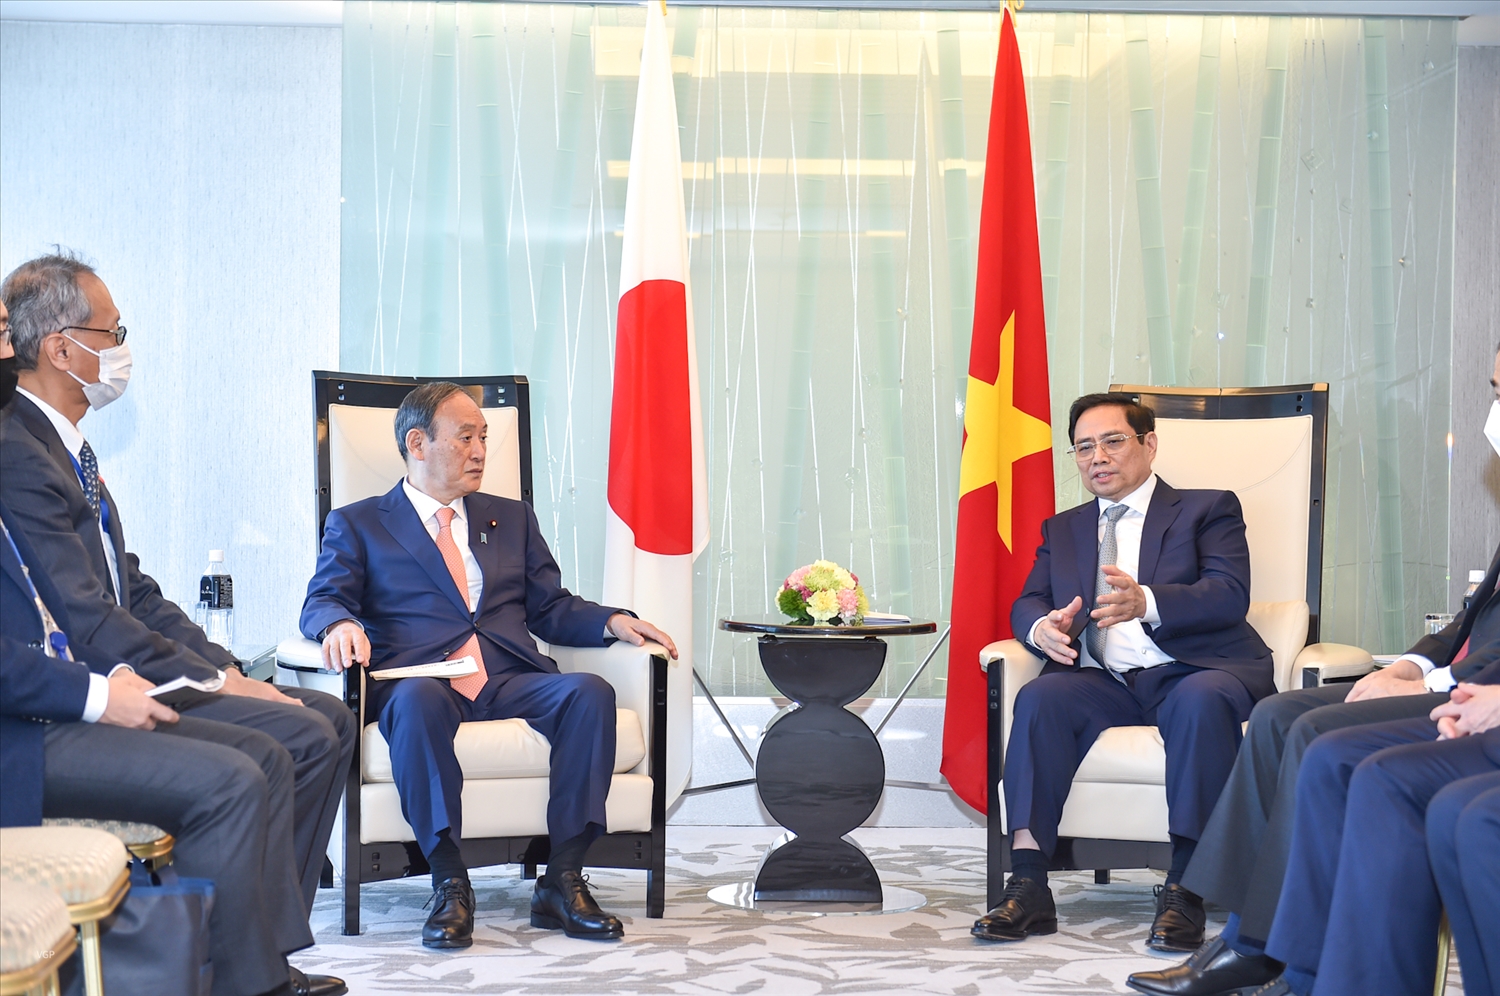 Cựu Thủ tướng Suga Yoshohide hoan nghênh và đánh giá cao chuyến thăm chính thức Nhật Bản của Thủ tướng Phạm Minh Chính, cho rằng chuyến thăm sẽ góp phần thúc đẩy hơn nữa quan hệ Đối tác chiến lược sâu rộng Việt Nam-Nhật Bản trên tất cả các lĩnh vực. Ảnh: VGP/Nhật Bắc